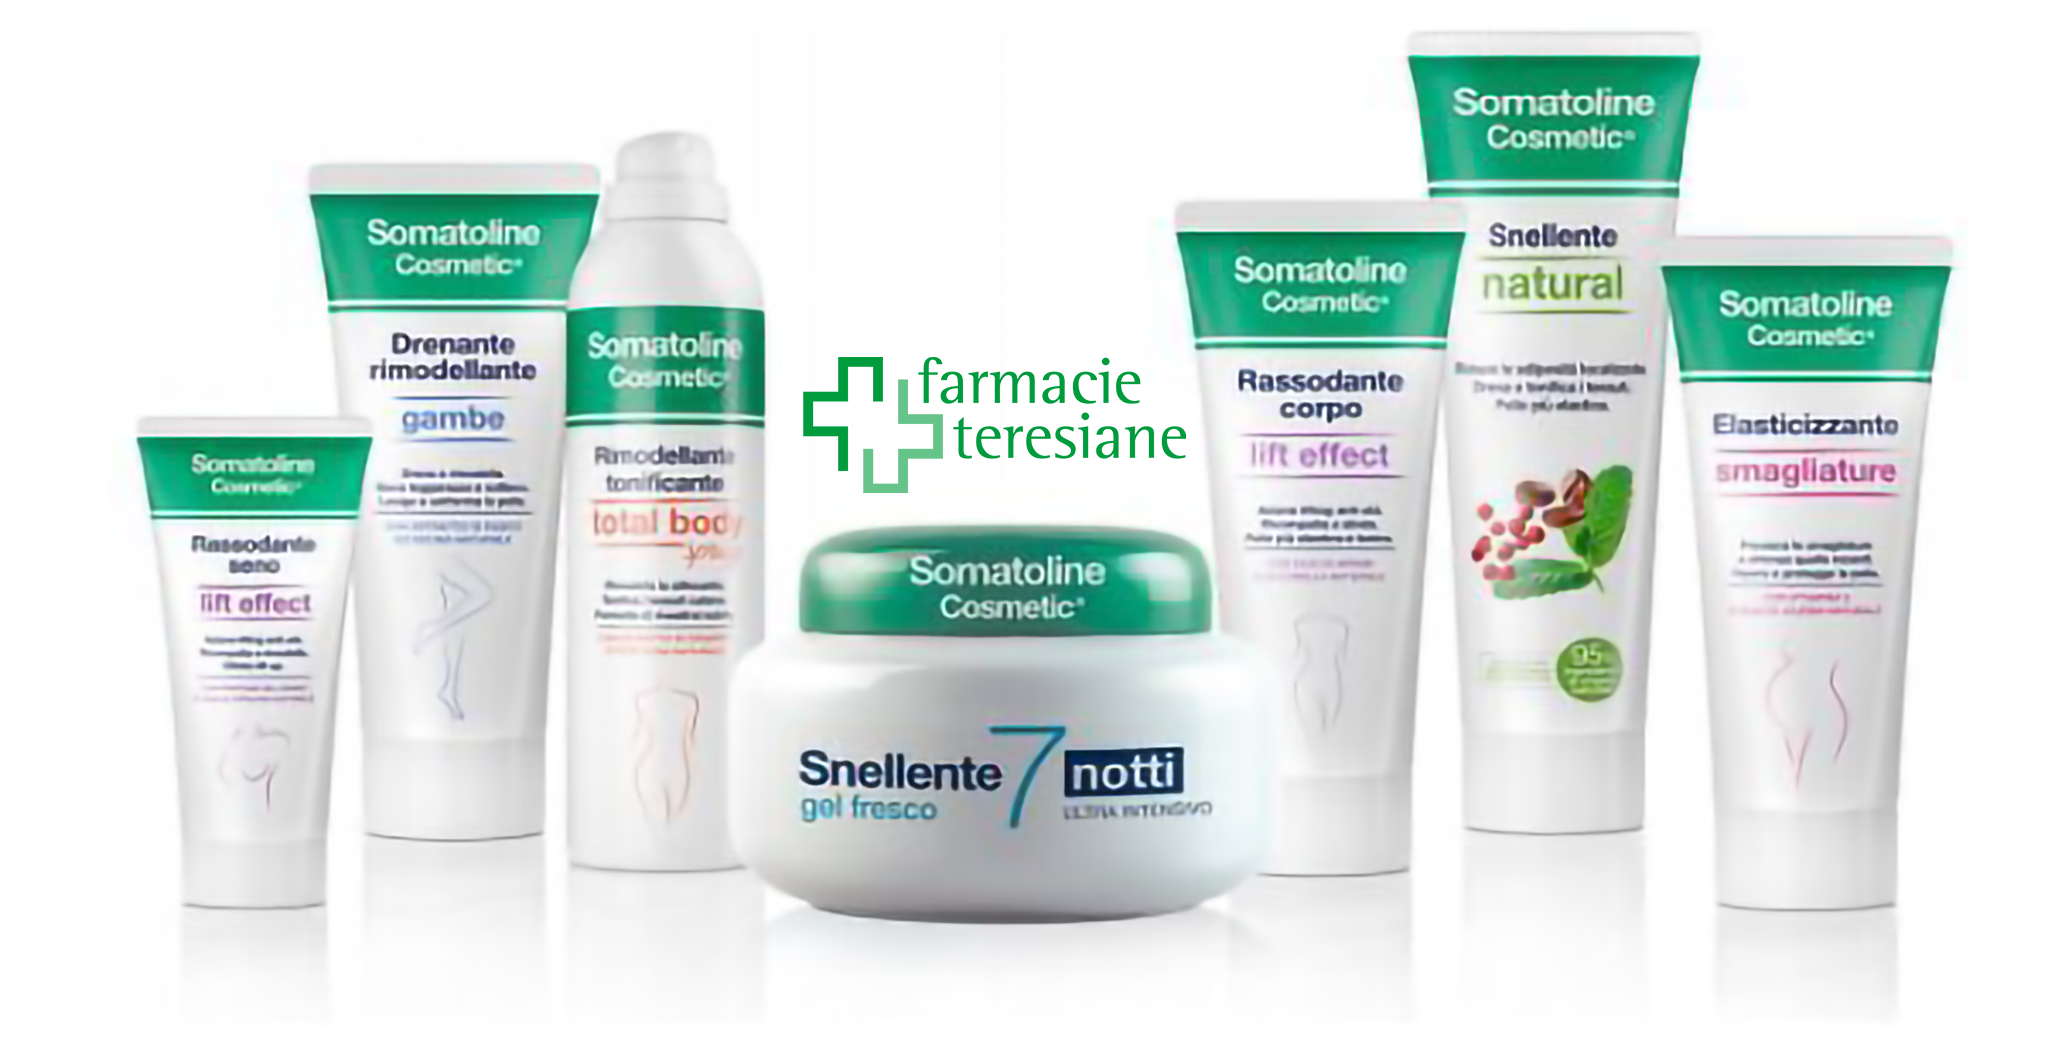 Somatoline Cosmetic: Da oggi 05 marzo fino alla fine di aprile 10€ di sconto immediato su ogni prodotto acquistato.